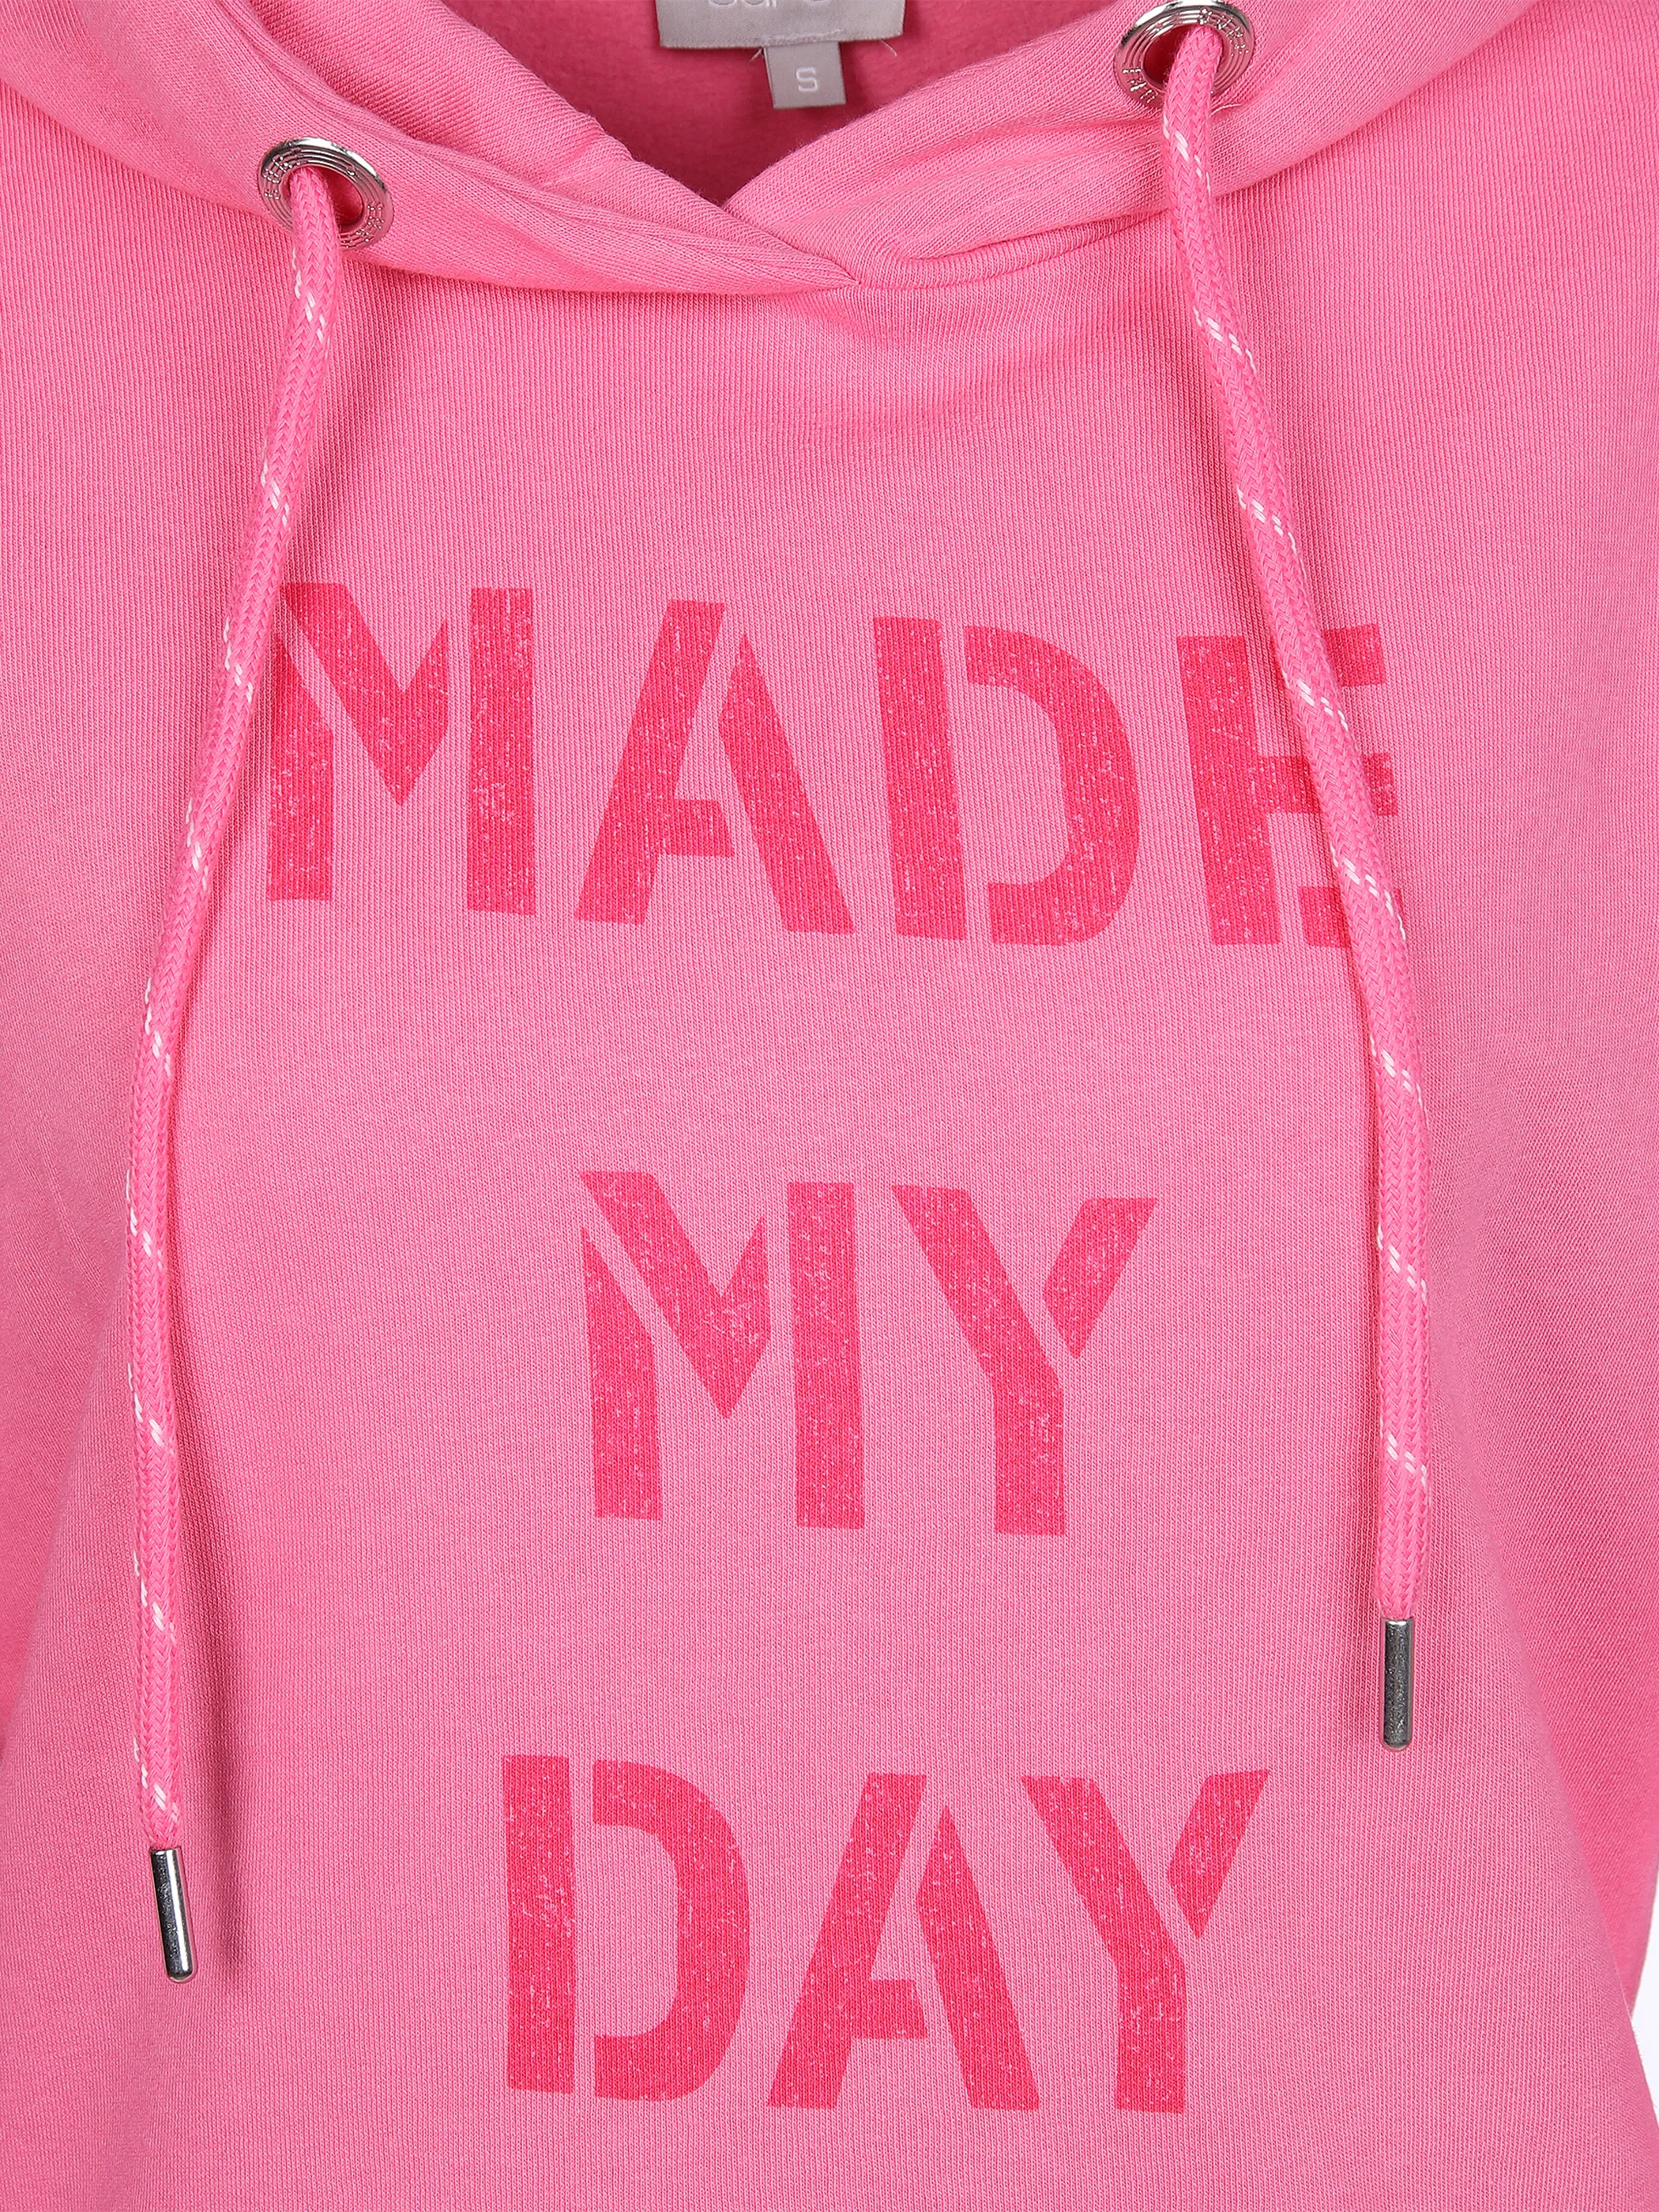 Sure Da-Sweatshirt mit Print Pink 861308 PINK 3